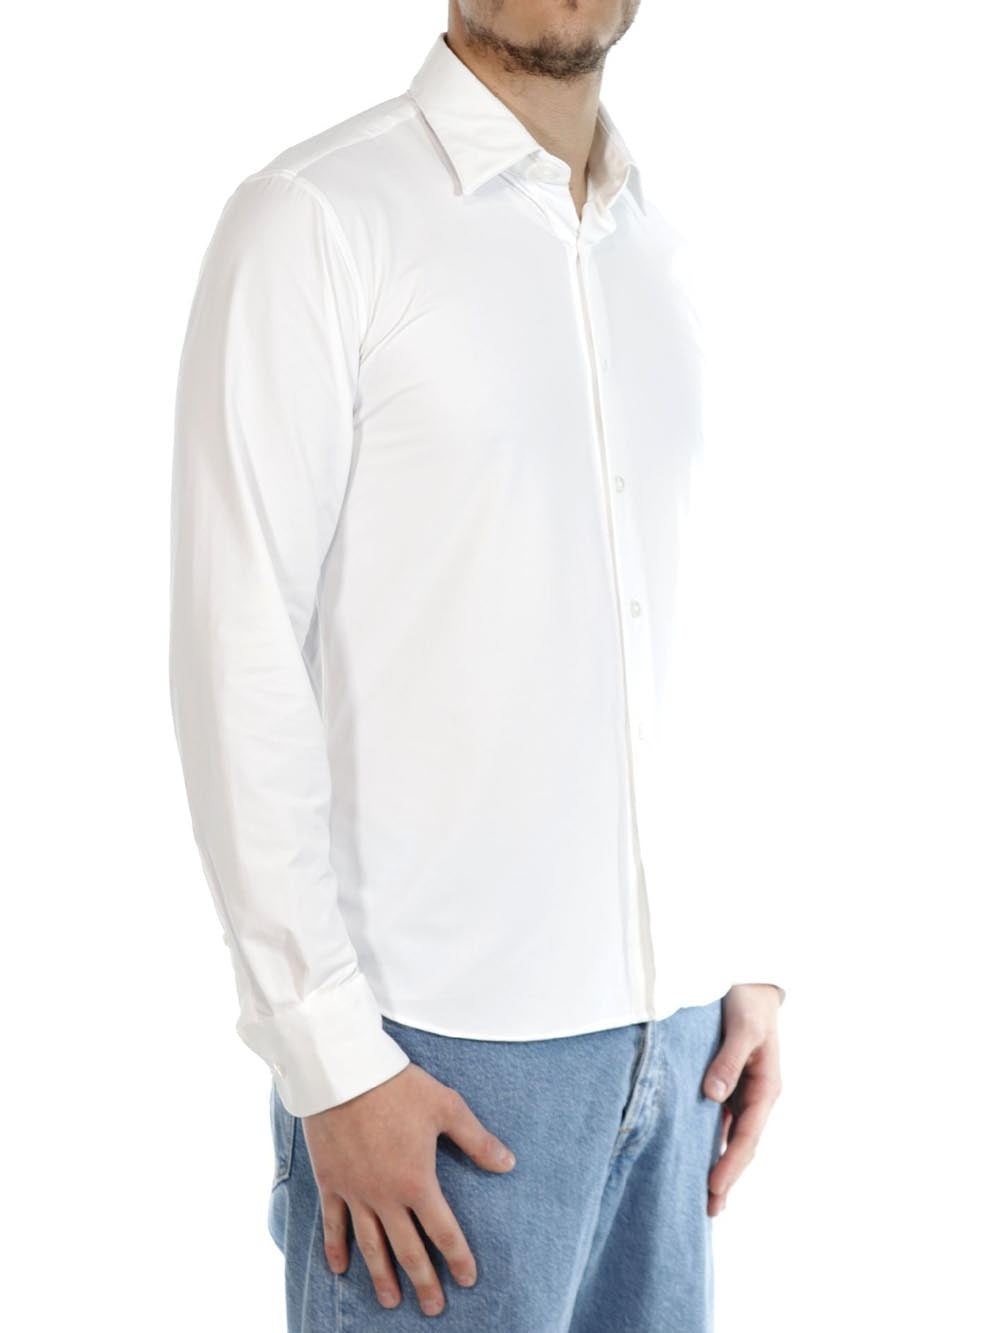 RRD Roberto Ricci Designs Camicia Uomo Oxford Shirt Bianco